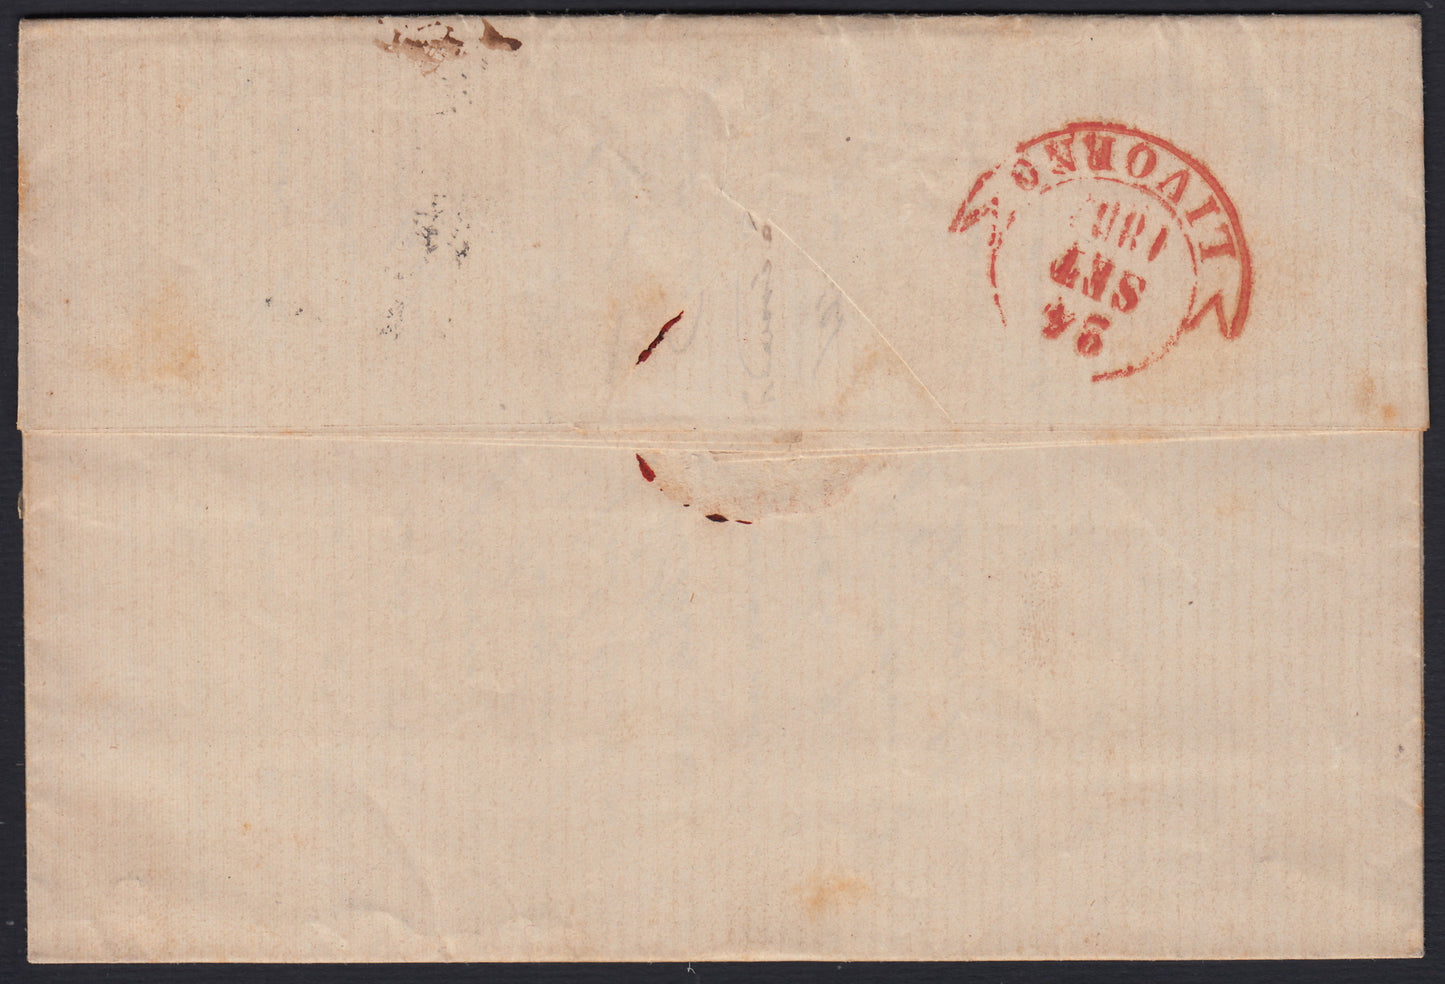 259 - 1857 - IV emissione, Lettera spedita da Genova per Livorno 22/9/57 affrancata con c. 40 rosso scarlatto tiratura 1857 (16A, Rattone n. 33a)